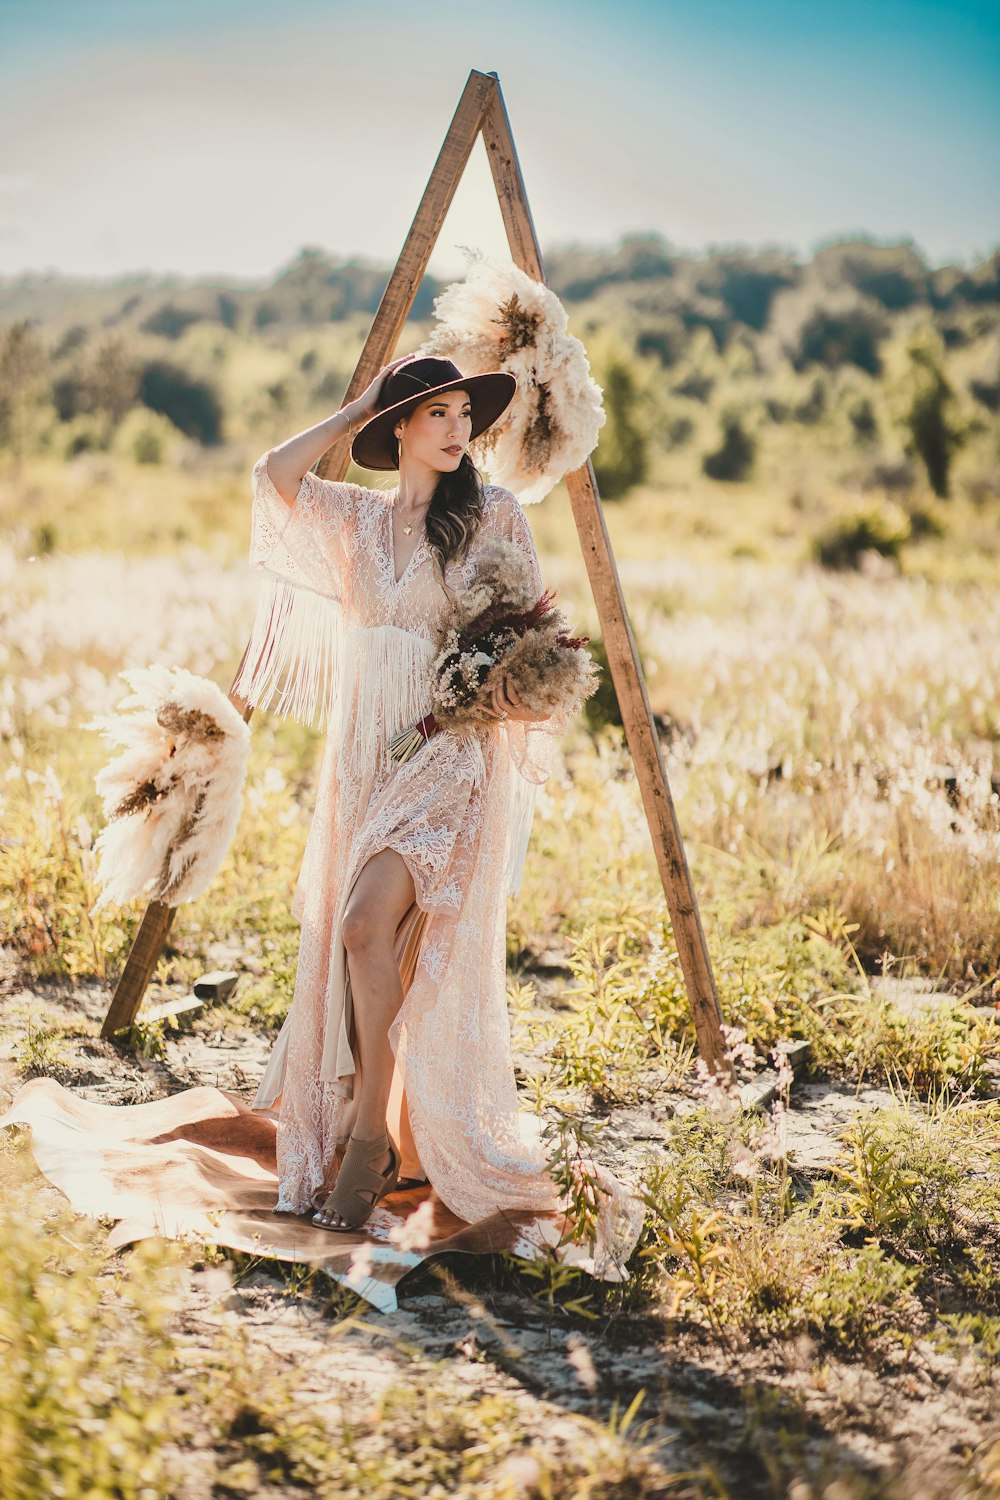 Una persona con un vestido blanco sosteniendo un palo en un campo